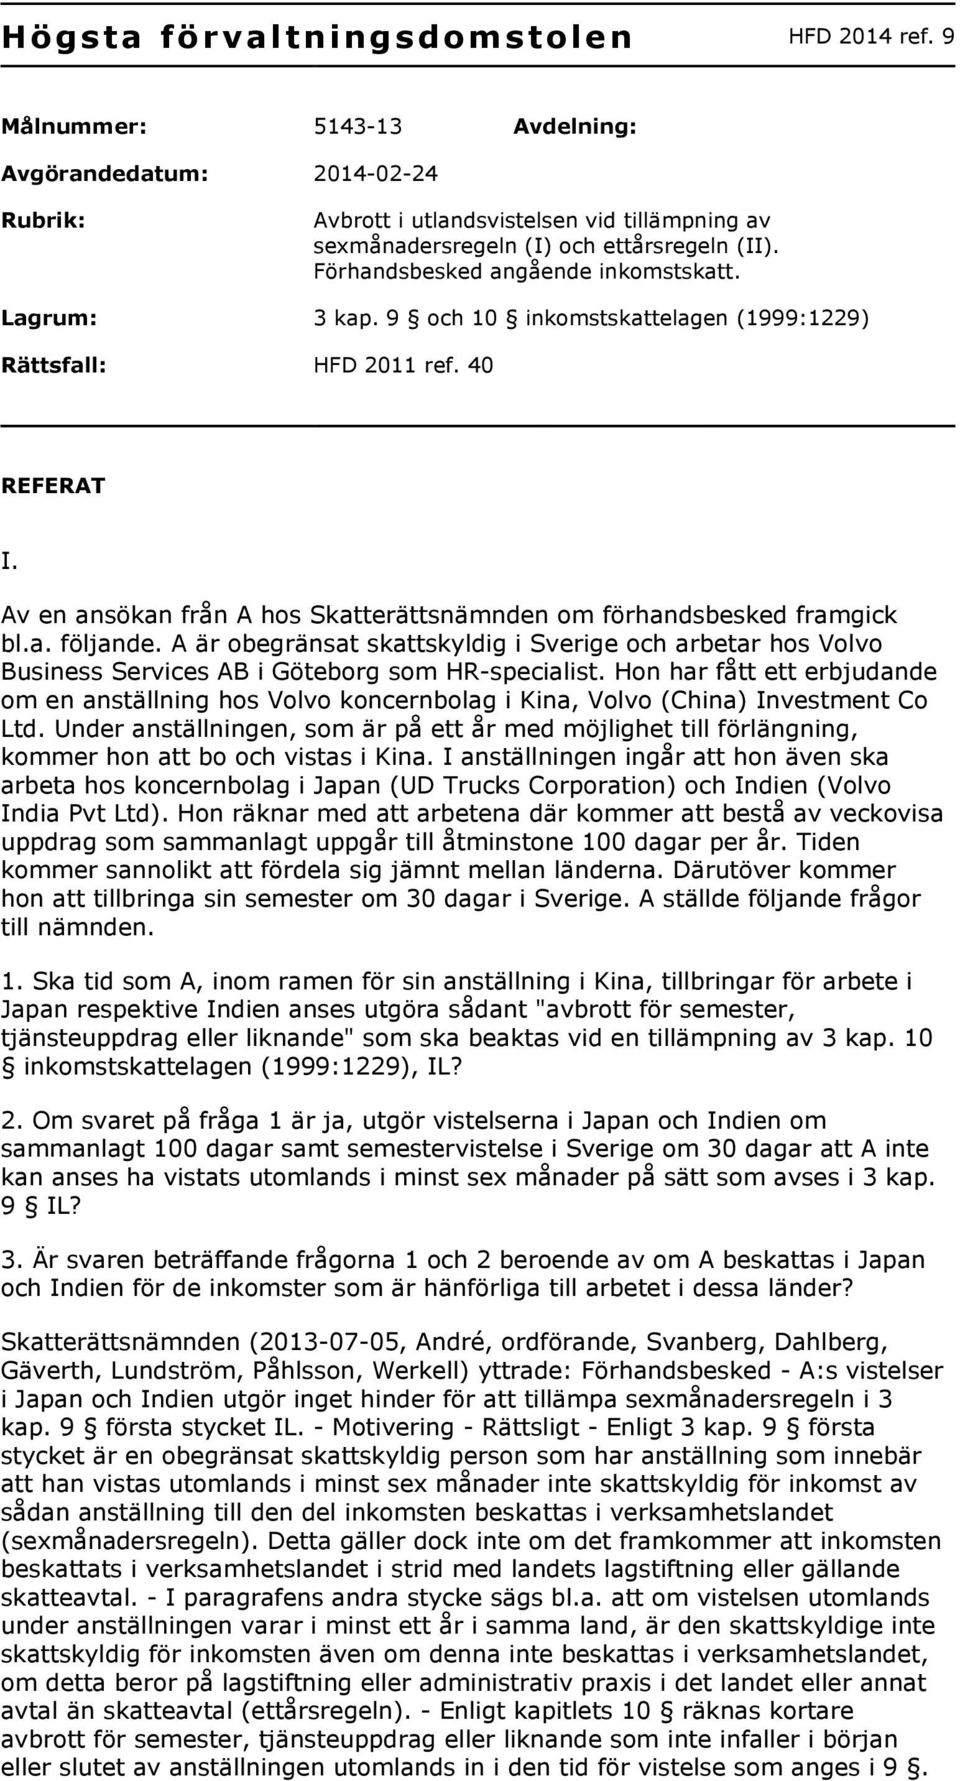 Av en ansökan från A hos Skatterättsnämnden om förhandsbesked framgick bl.a. följande. A är obegränsat skattskyldig i Sverige och arbetar hos Volvo Business Services AB i Göteborg som HR-specialist.